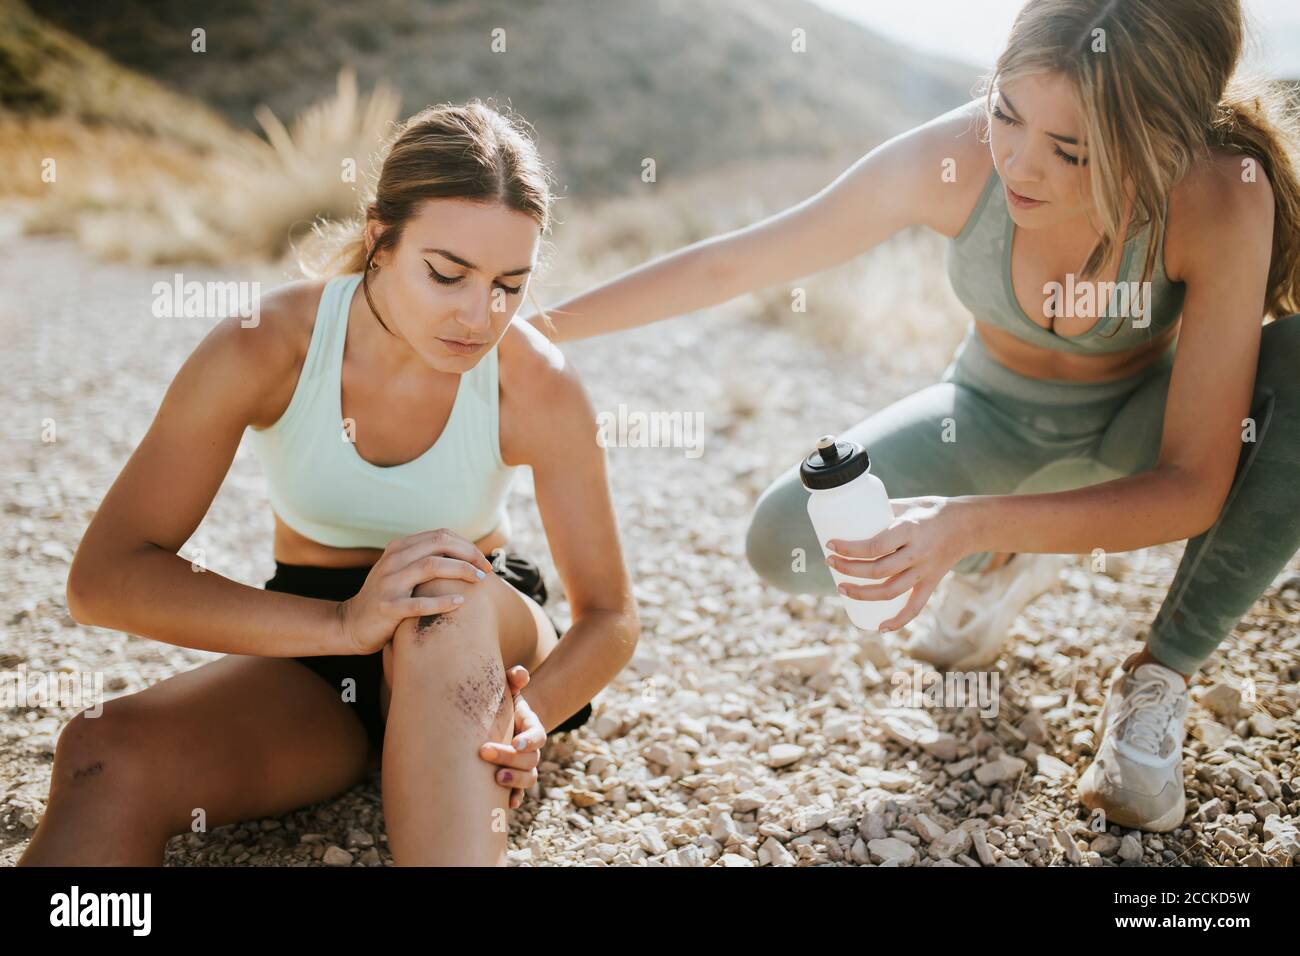 Mujer atleta cuidando a un amigo con una lesión Foto de stock